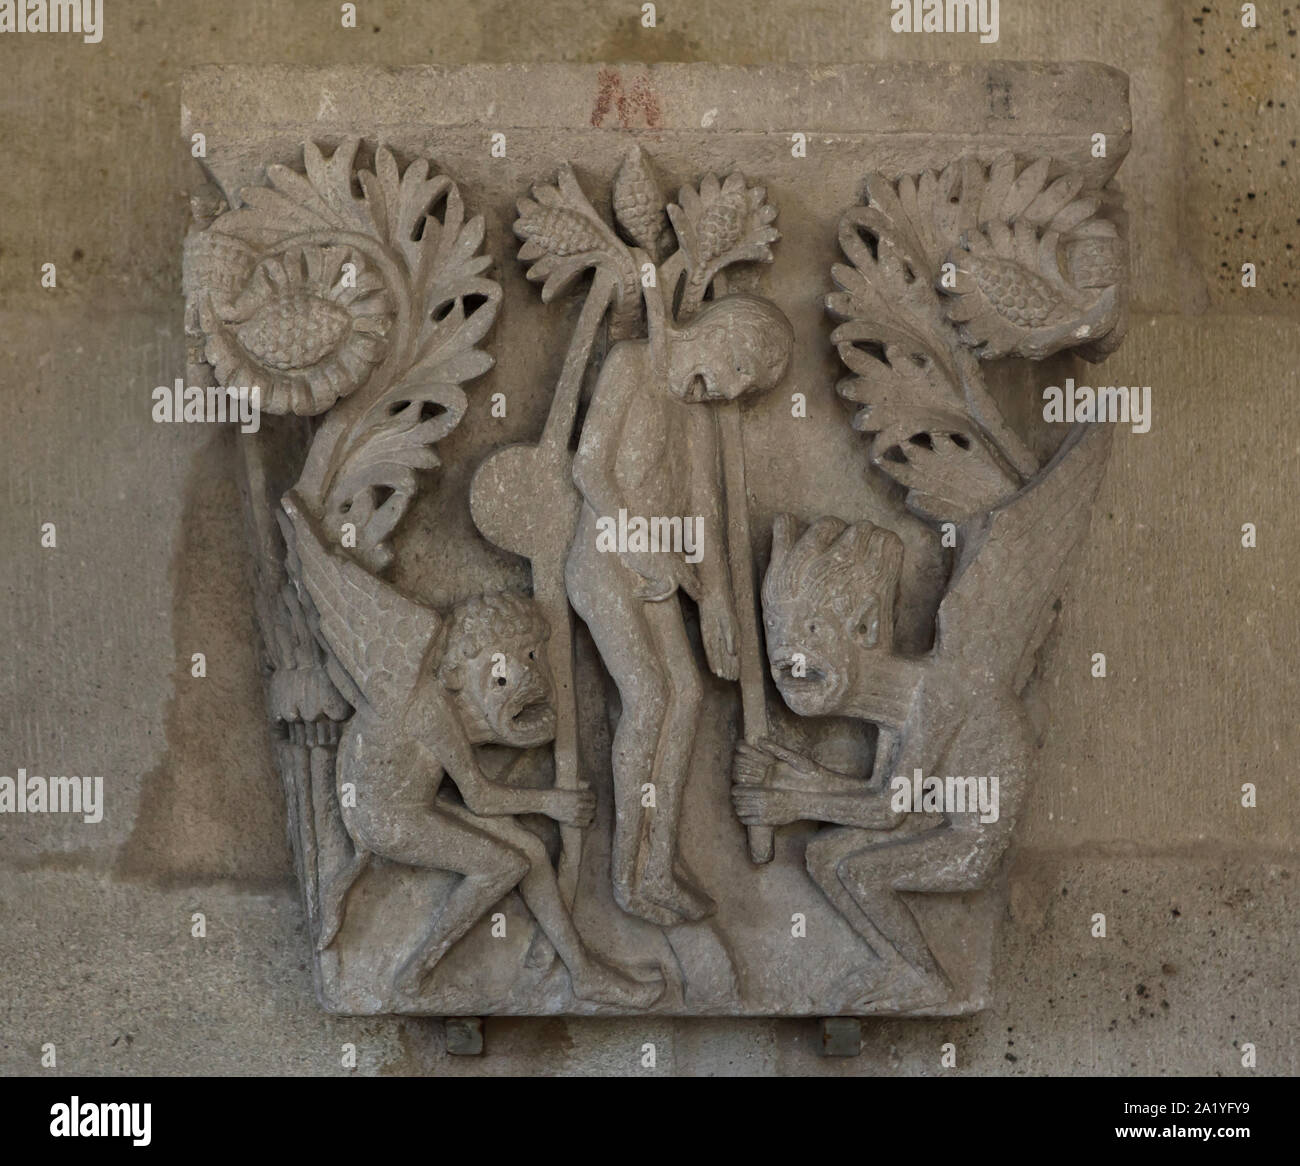 La pendaison de Judas représenté dans la capitale romane datée du 12ème siècle de la cathédrale d'Autun (Cathédrale Saint-Lazare d'Autun), maintenant exposée dans la bibliothèque du chapitre de la cathédrale d'Autun à Autun, Bourgogne, France. La capitale a été probablement sculpté par le sculpteur roman français de Gislebertus. Banque D'Images